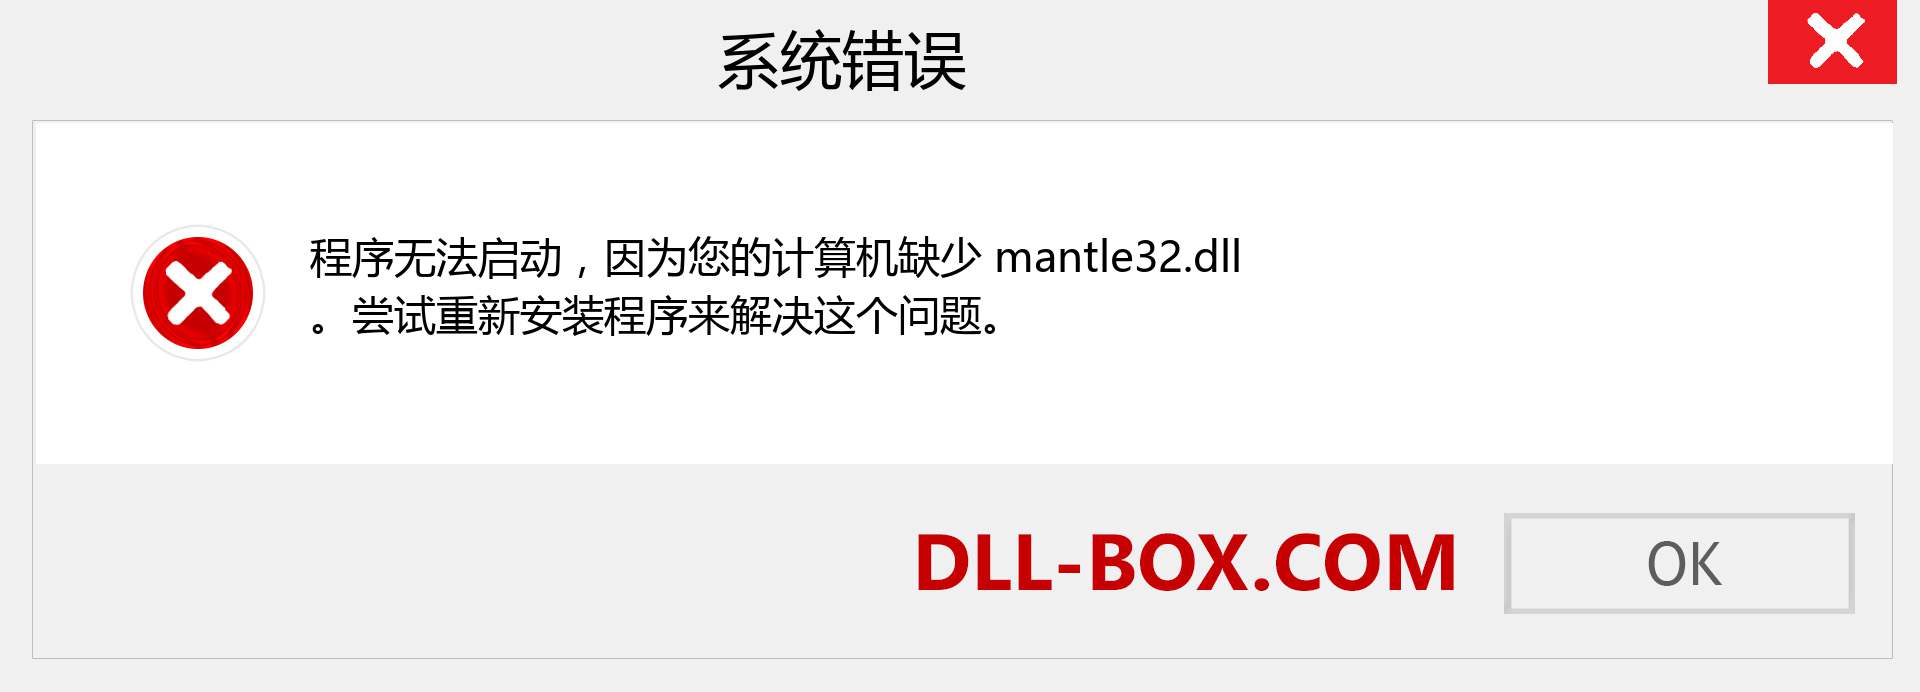 mantle32.dll 文件丢失？。 适用于 Windows 7、8、10 的下载 - 修复 Windows、照片、图像上的 mantle32 dll 丢失错误